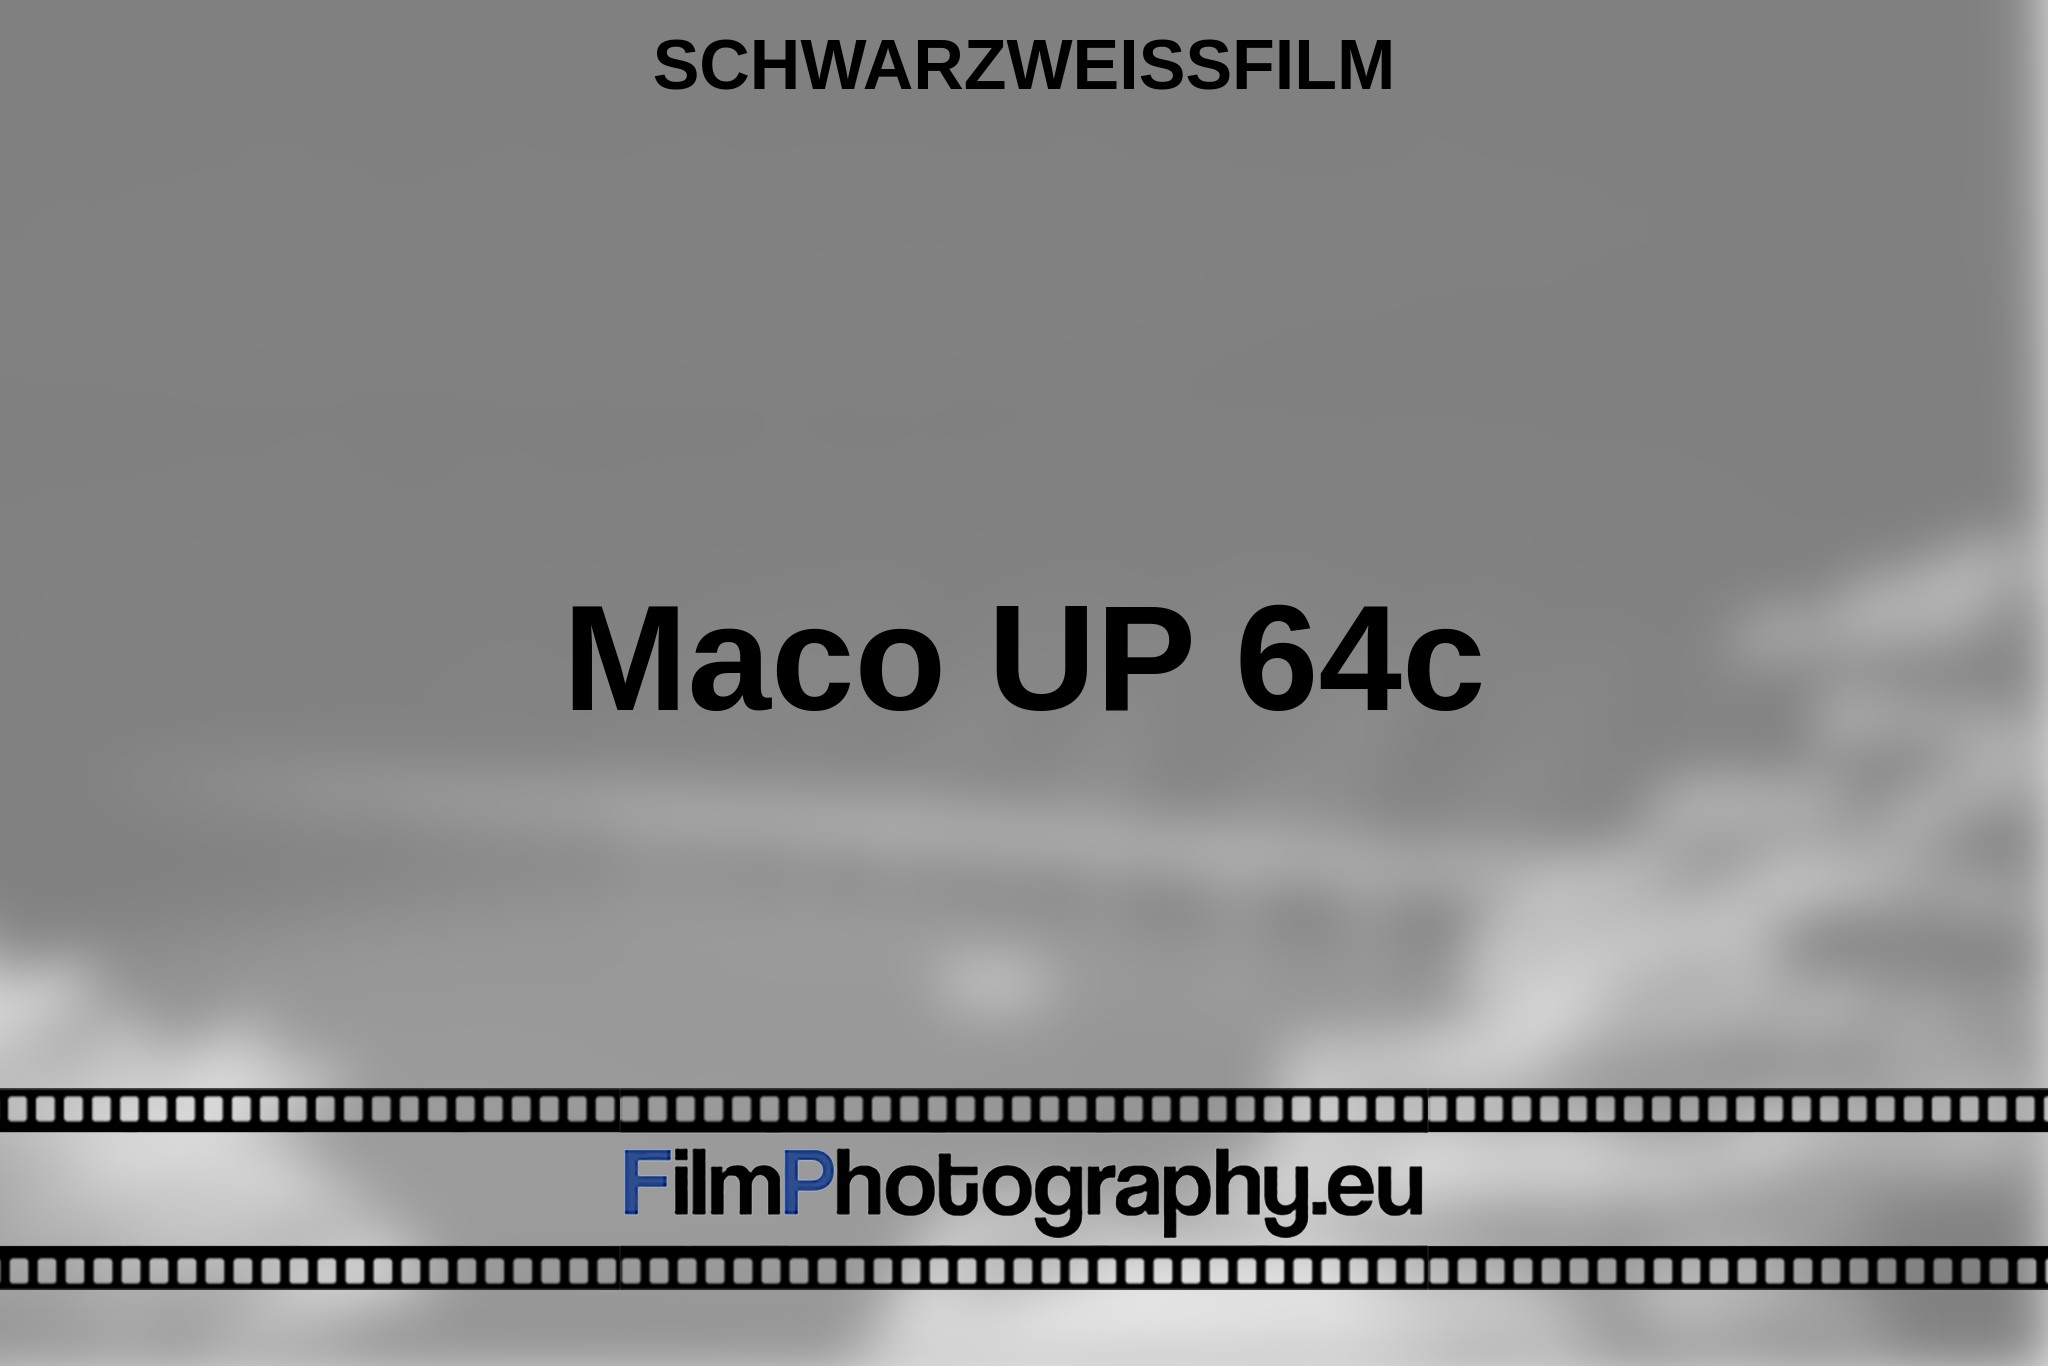 maco-up-64c-schwarzweißfilm-bnv.jpg